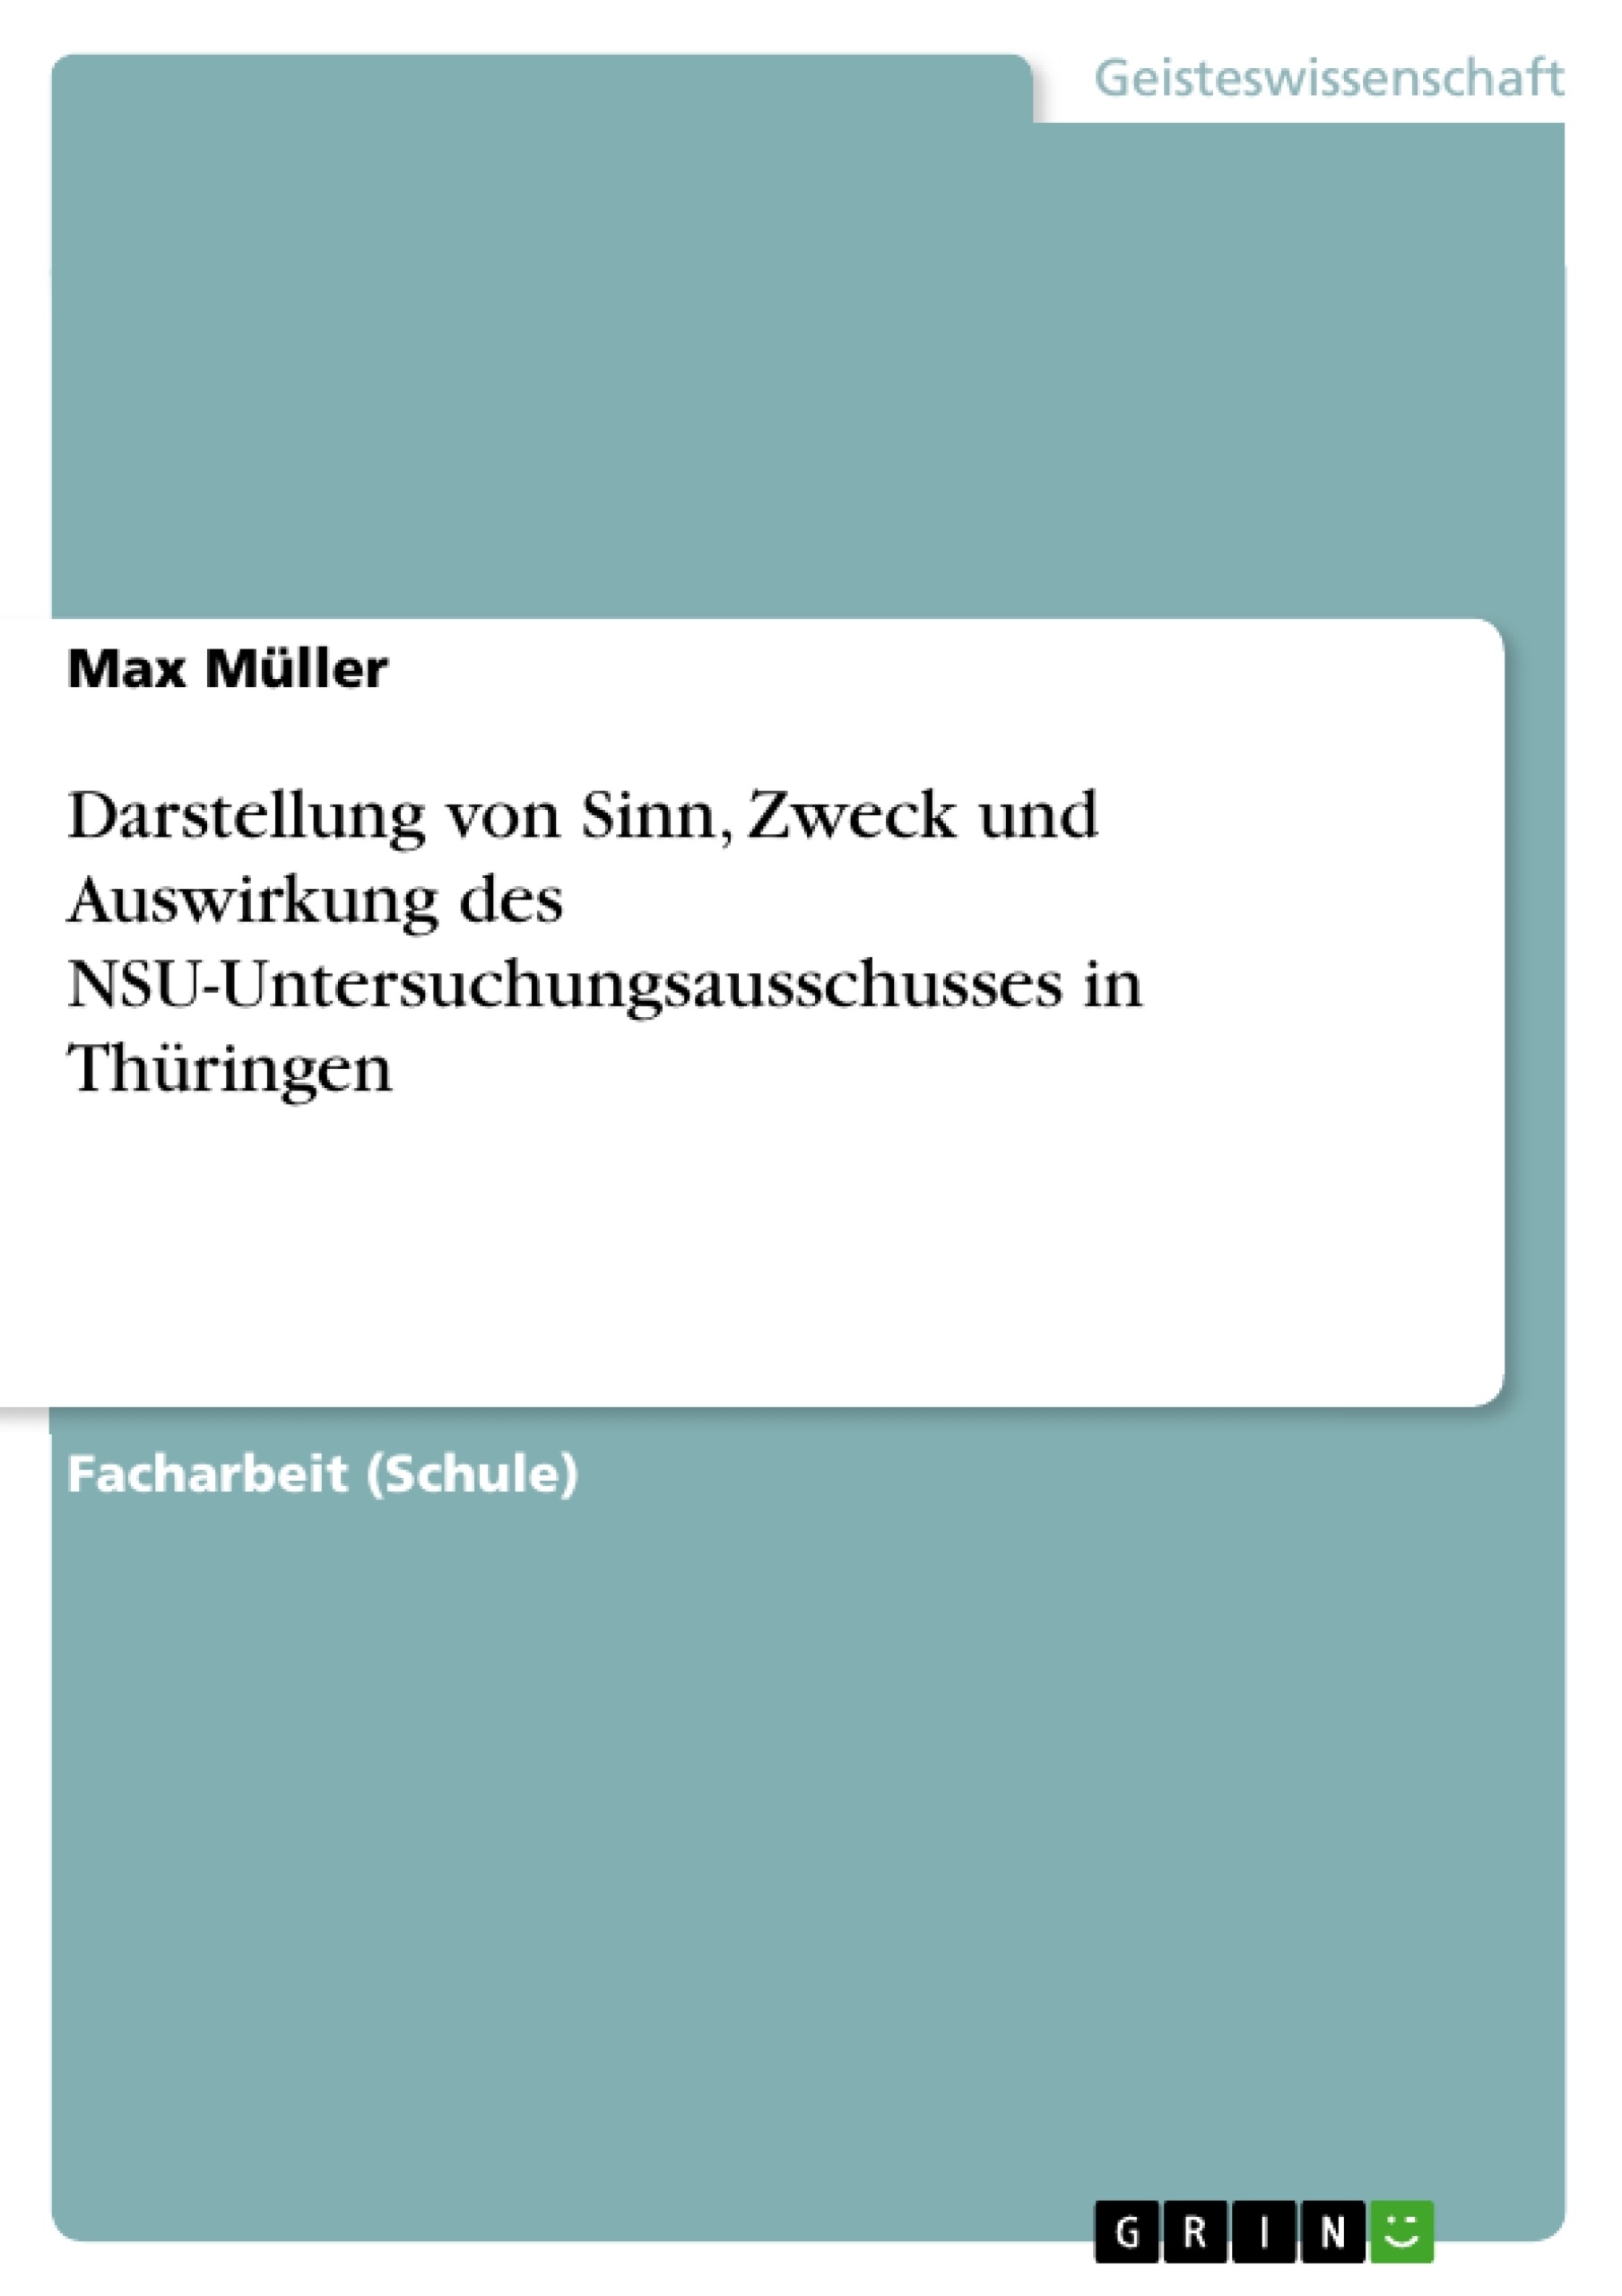 Title: Darstellung von Sinn, Zweck und Auswirkung des NSU-Untersuchungsausschusses in Thüringen